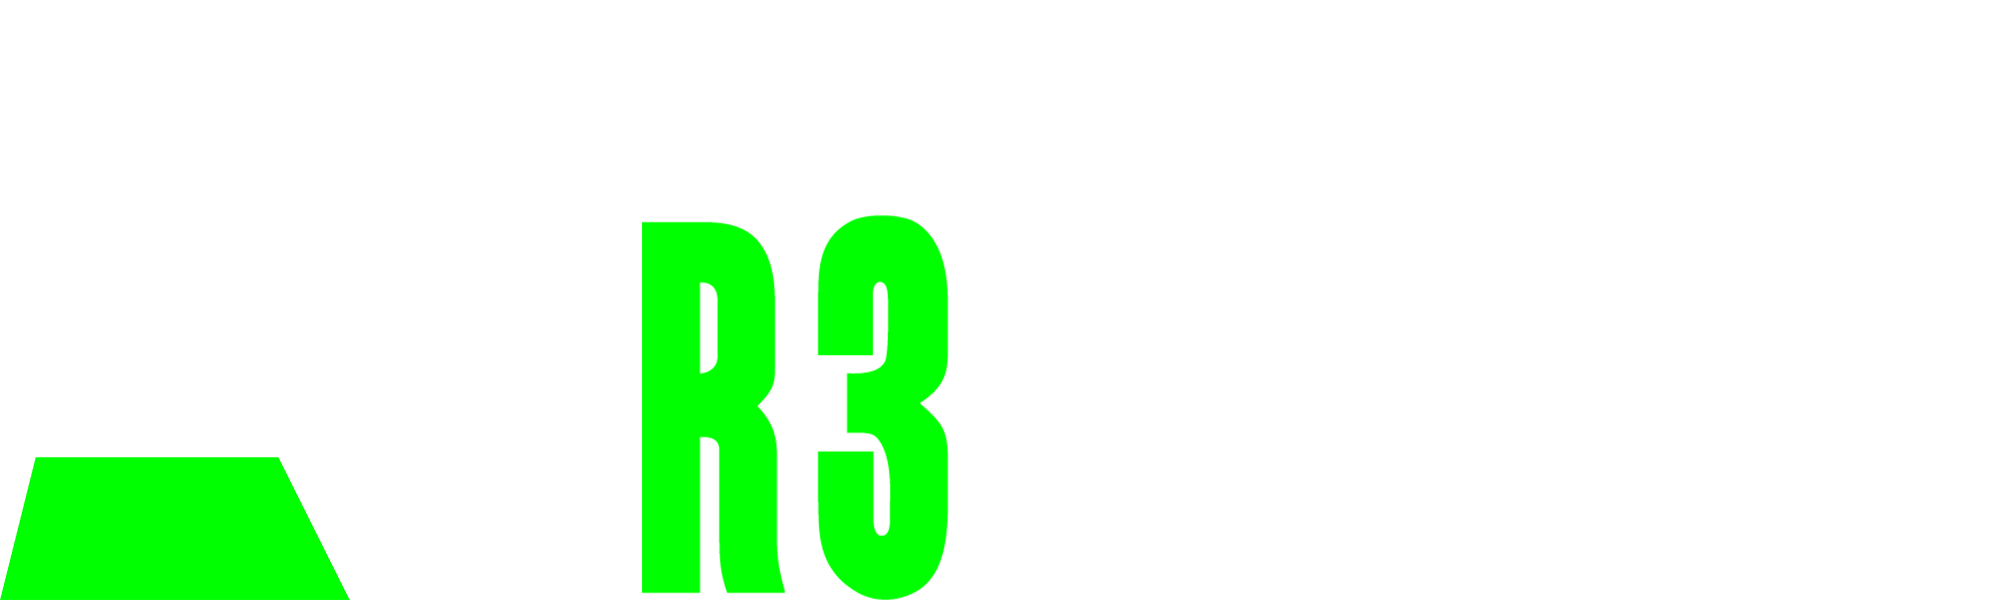 R3 Racing